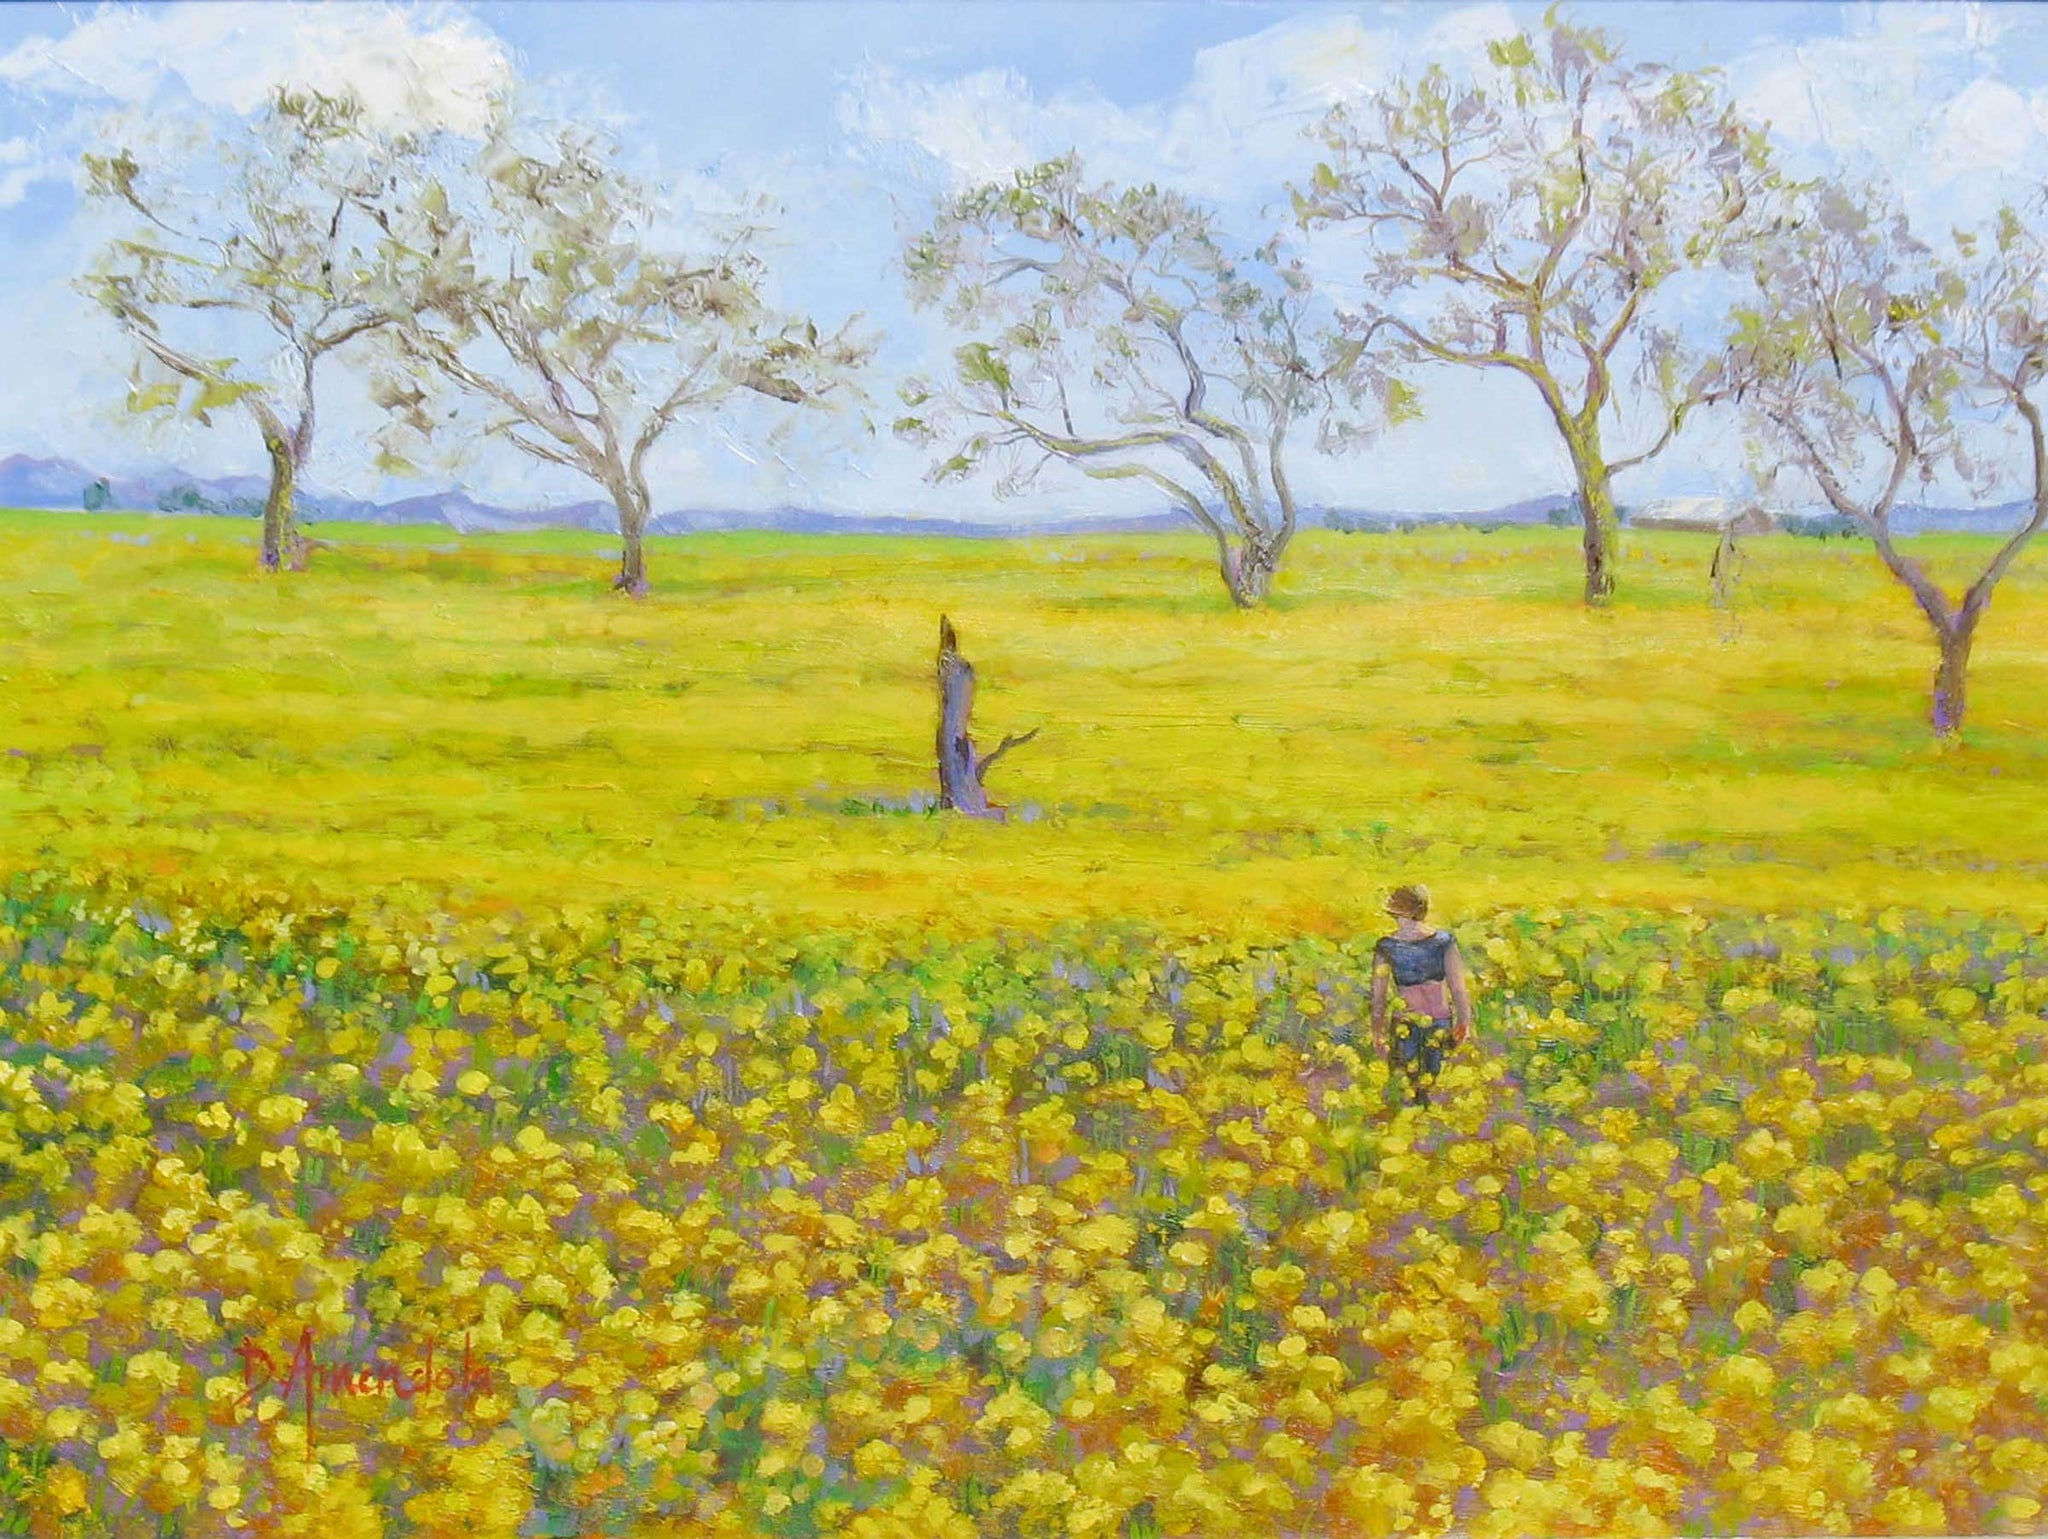 Walking In The Mustard Field